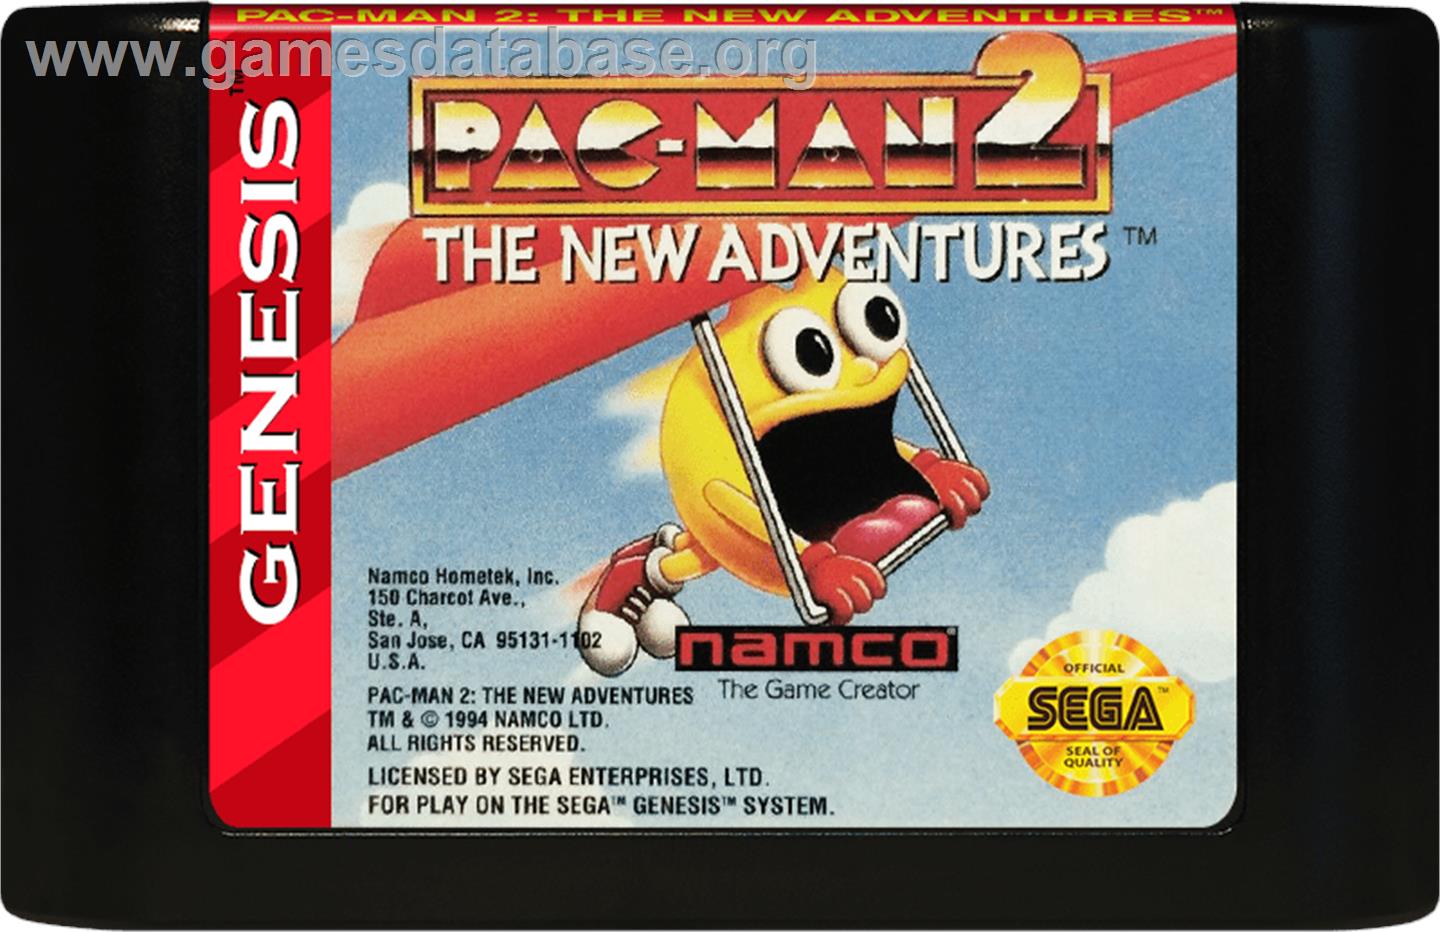 Pac-Man 2: The New Adventures - Sega Genesis - Artwork - Cartridge